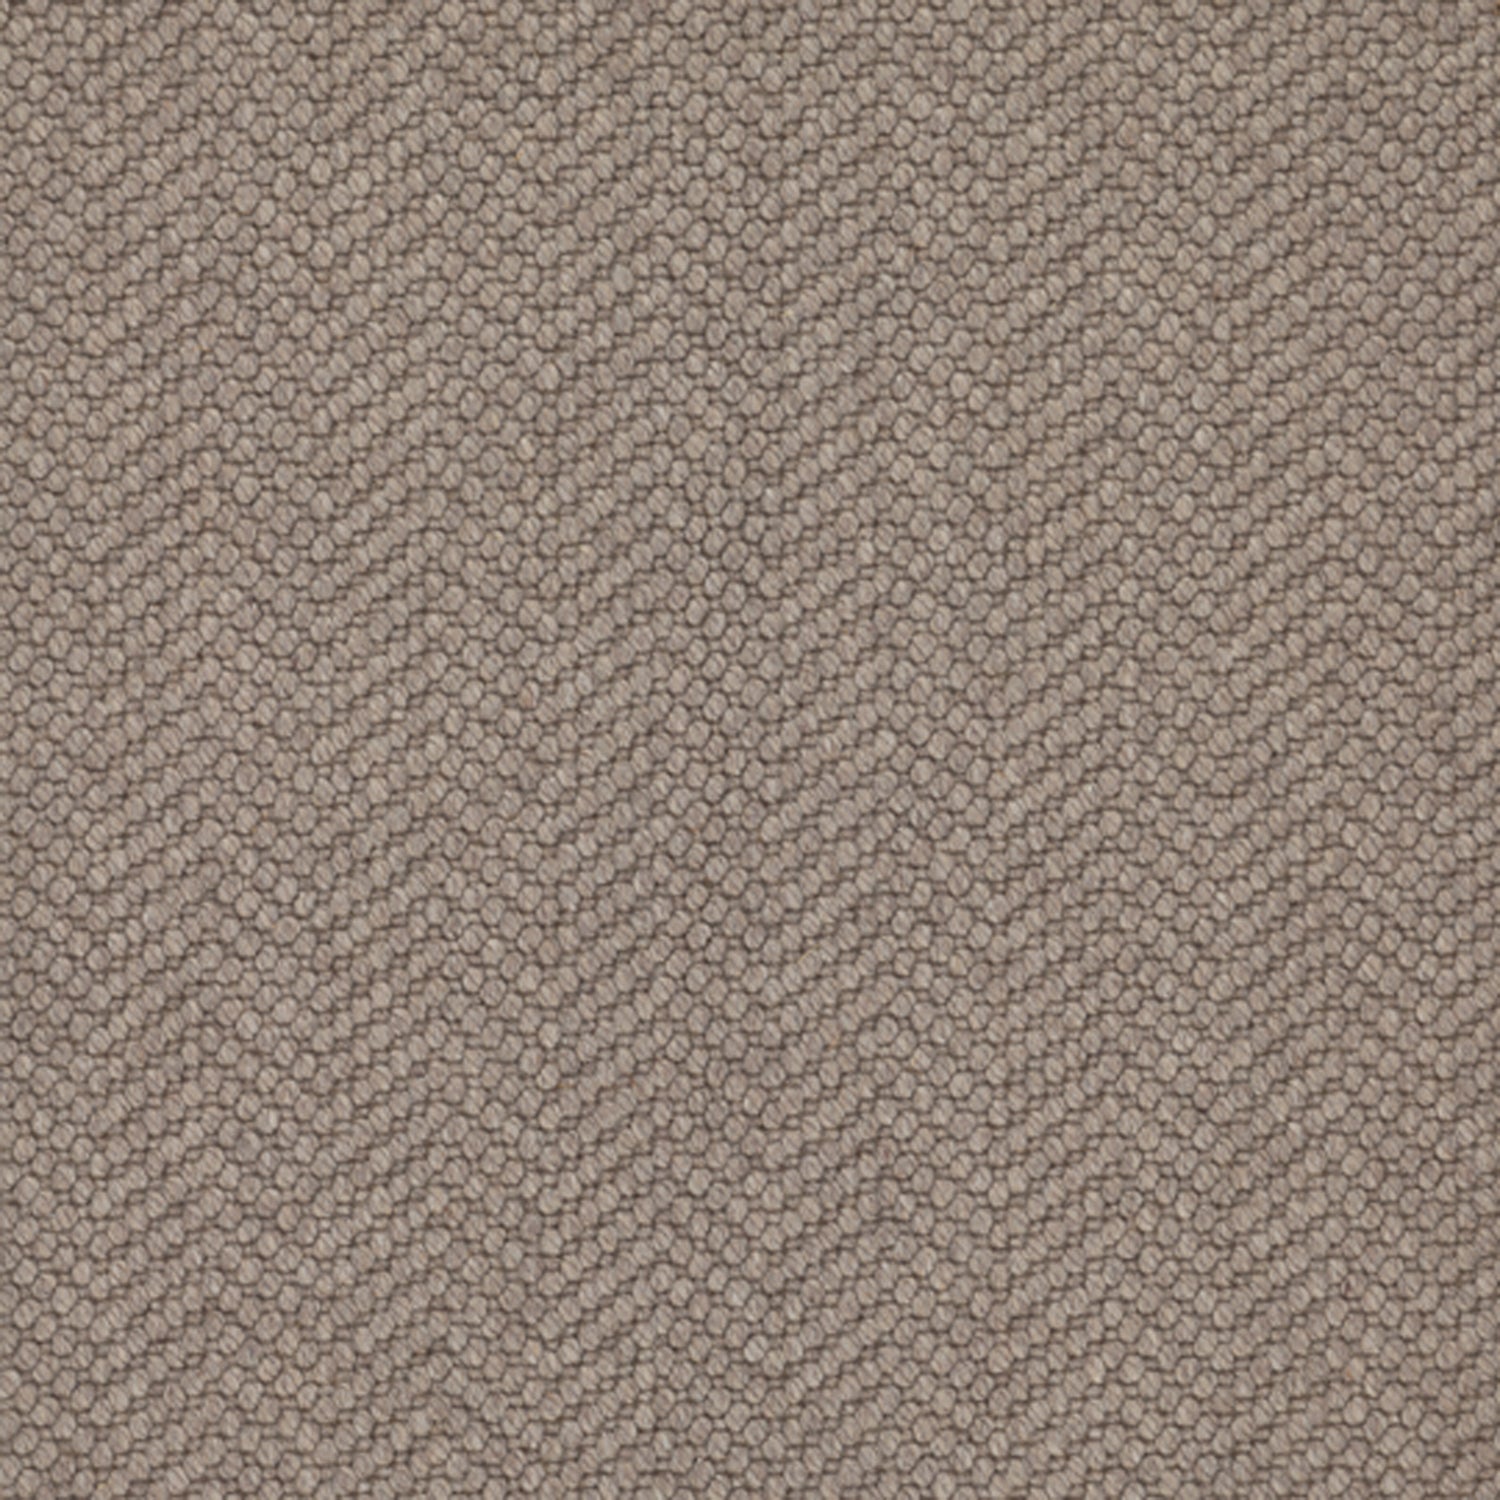 Wool broadloom carpet swatch in a dimensional herringbone weave in gray.